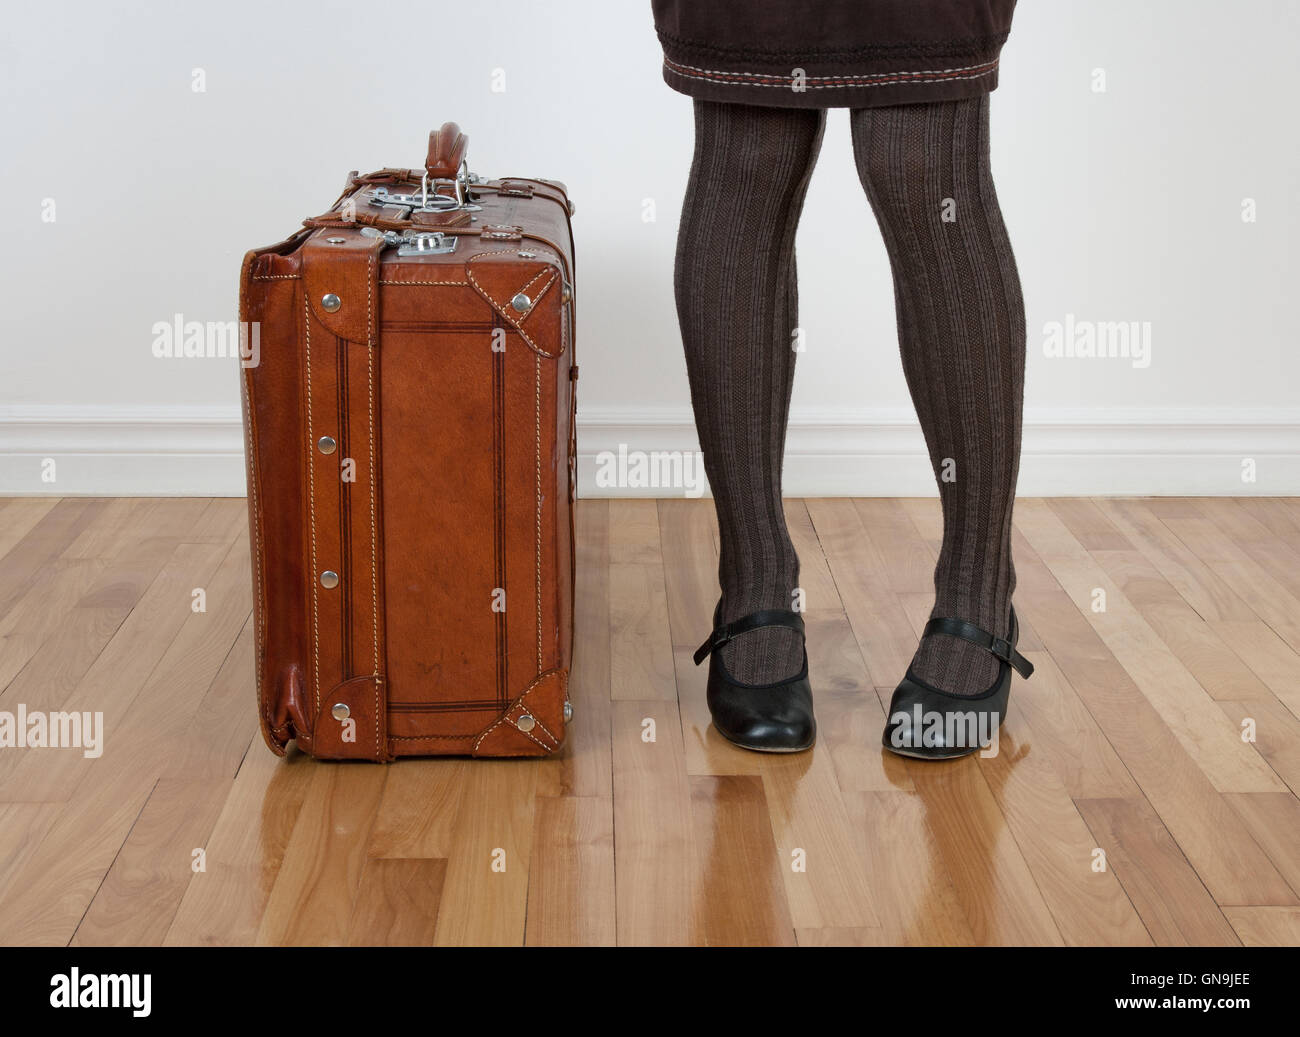 Femme en bas brun debout près de vintage suitcase Banque D'Images